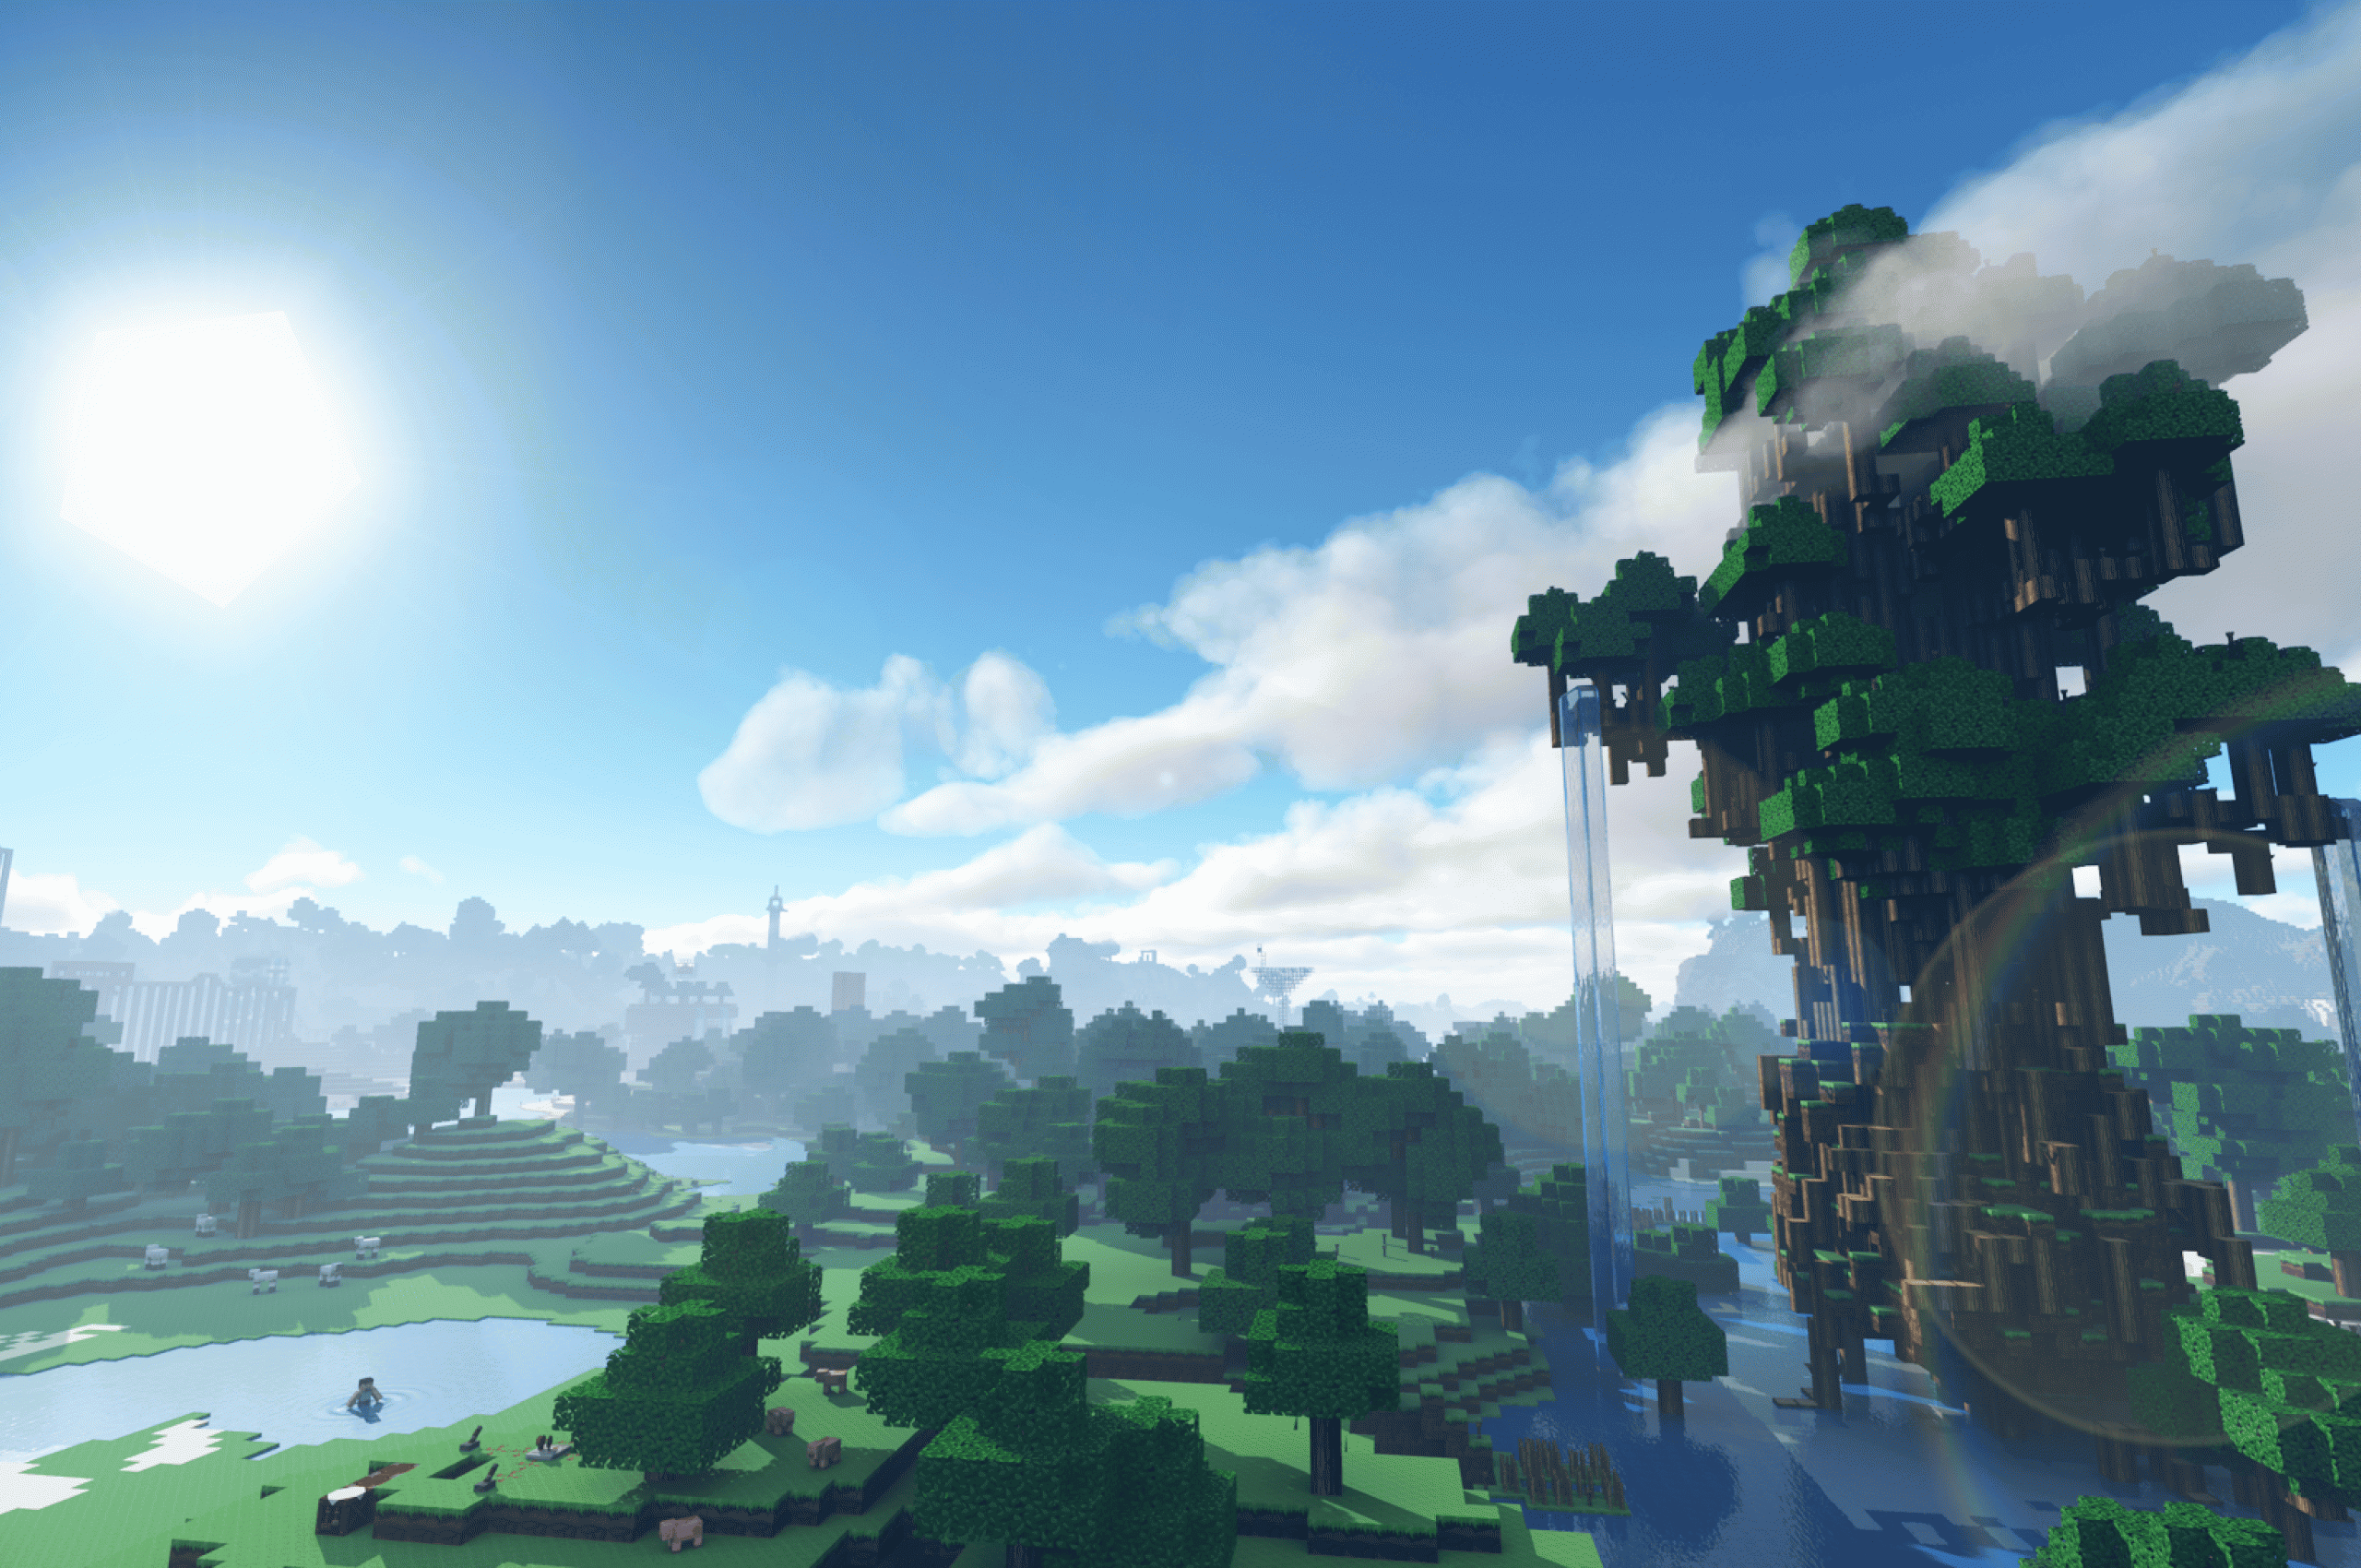 Hình ảnh Minecraft đẹp: Với những hình ảnh Minecraft đẹp như mơ này, bạn sẽ như đang được đưa vào một thế giới hoàn toàn khác. Tại đây, bạn sẽ được tự do thỏa sức sáng tạo, khám phá và trải nghiệm những cảm giác mới lạ, được xây dựng từ những khối vuông đơn giản nhất. Hãy để mình rơi vào cuộc phiêu lưu kỳ thú này cùng những hình ảnh đẹp nhất từ Minecraft!